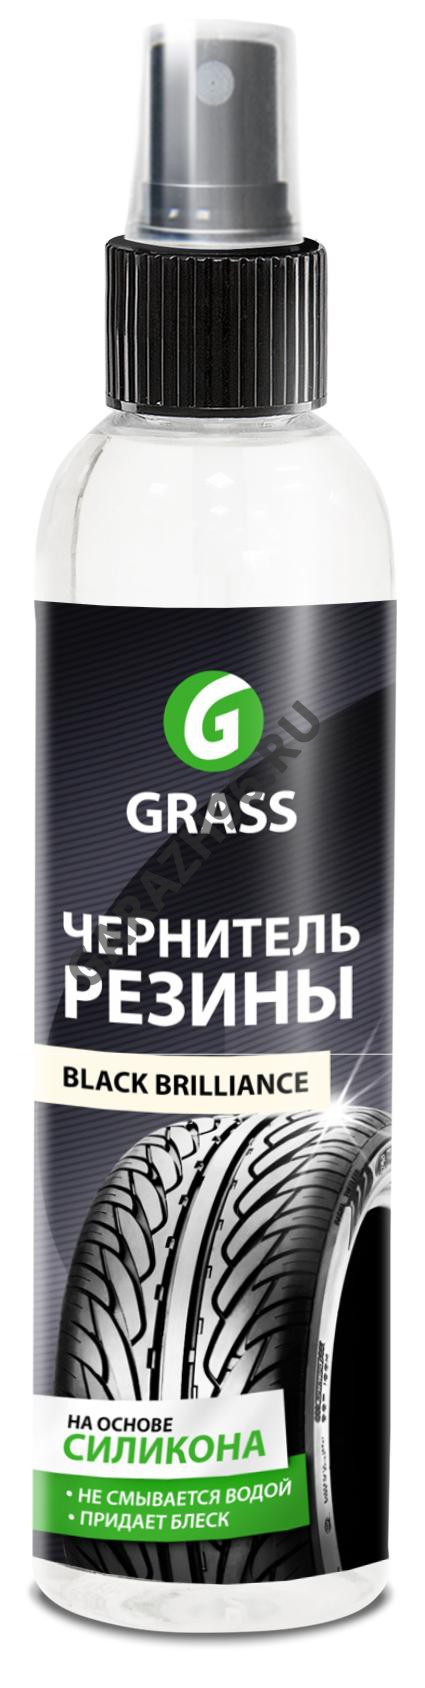 GRASS Чернитель резины с силиконом концентрат 250мл 152250